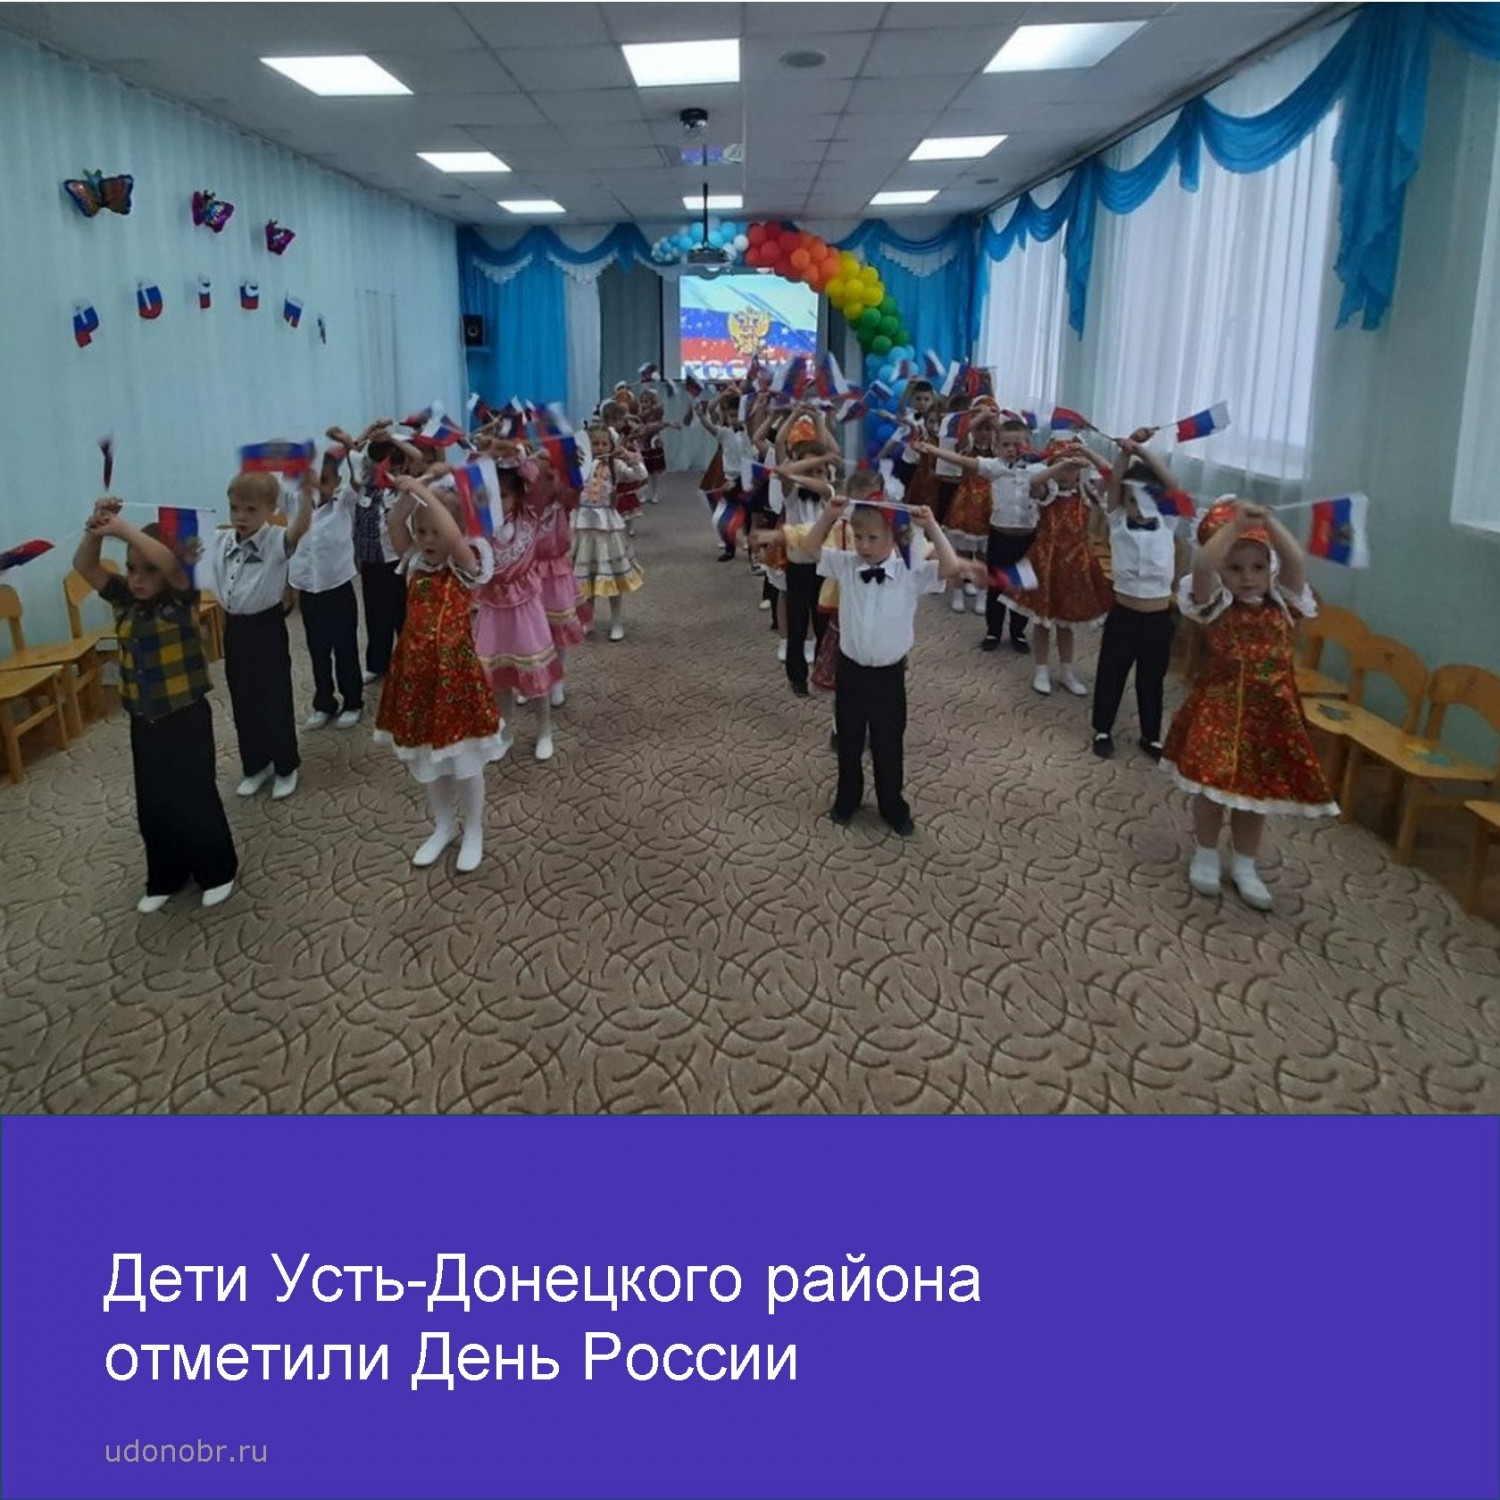 Прошли мероприятия и акции, посвященные Дню России